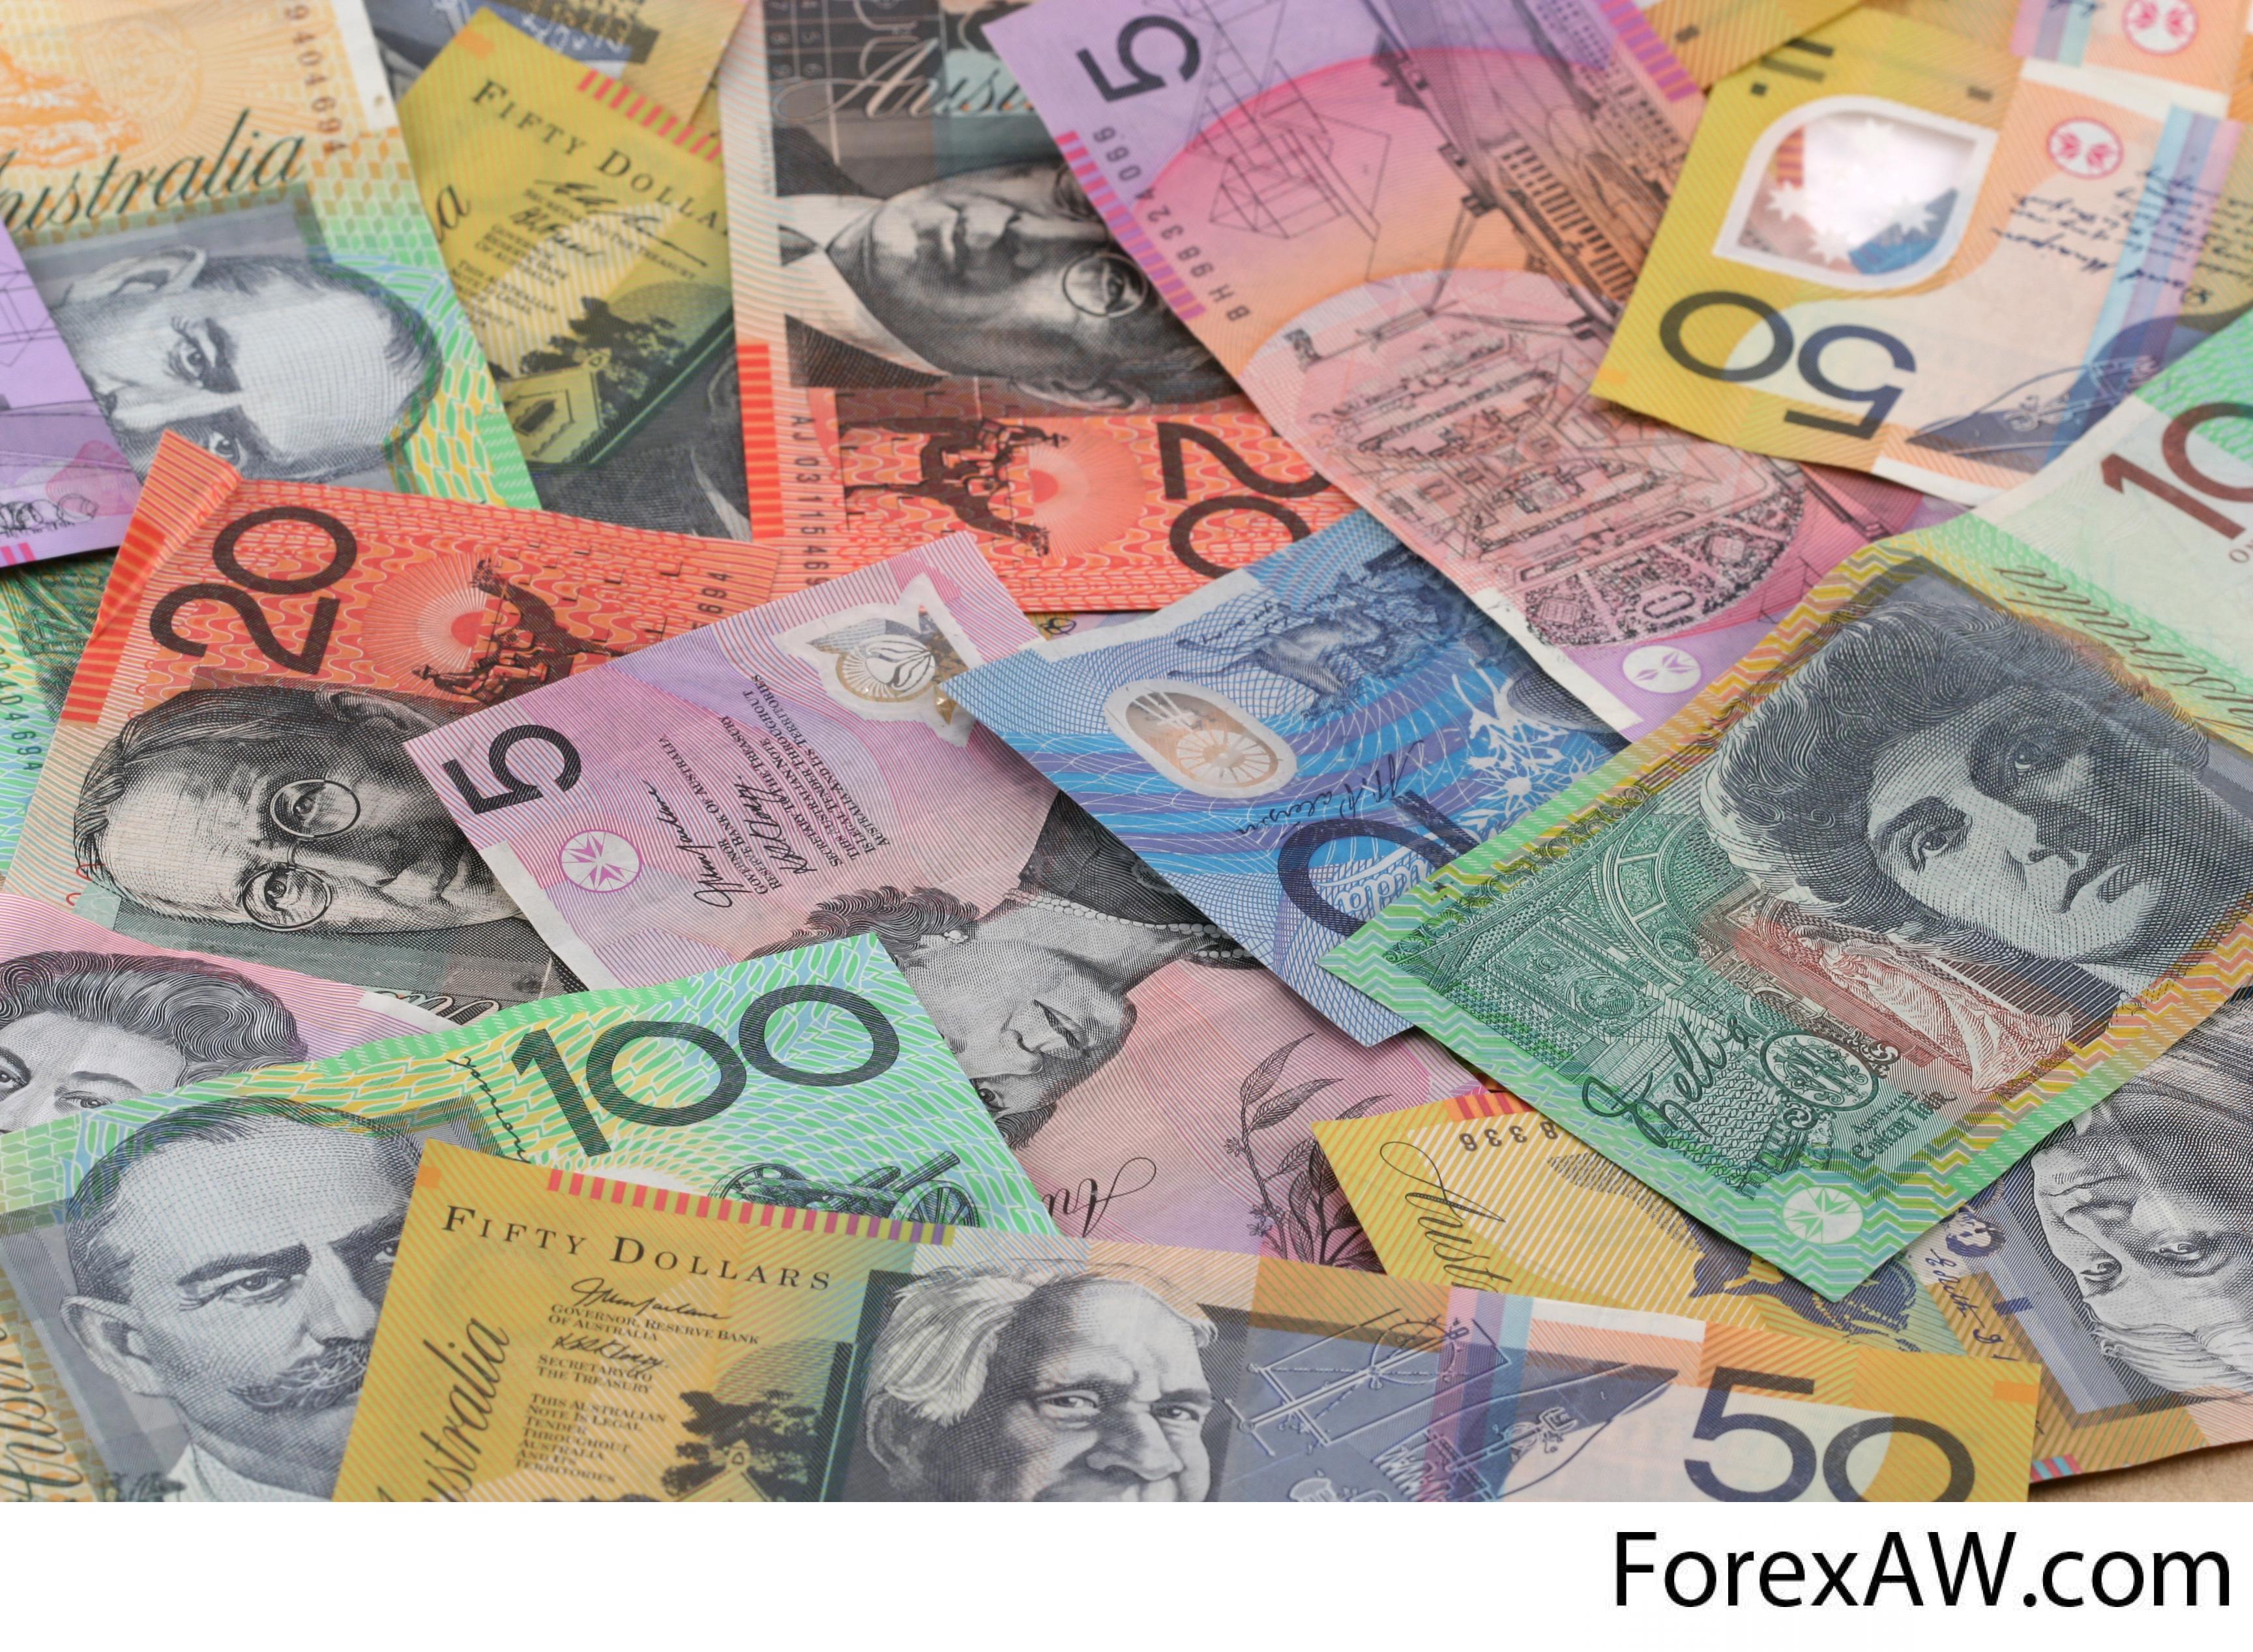 Австралийская валюта. Австралийский доллар купюры. Национальная валюта Австралии. Денежные знаки Австралии. Австралии – австралийский доллар.